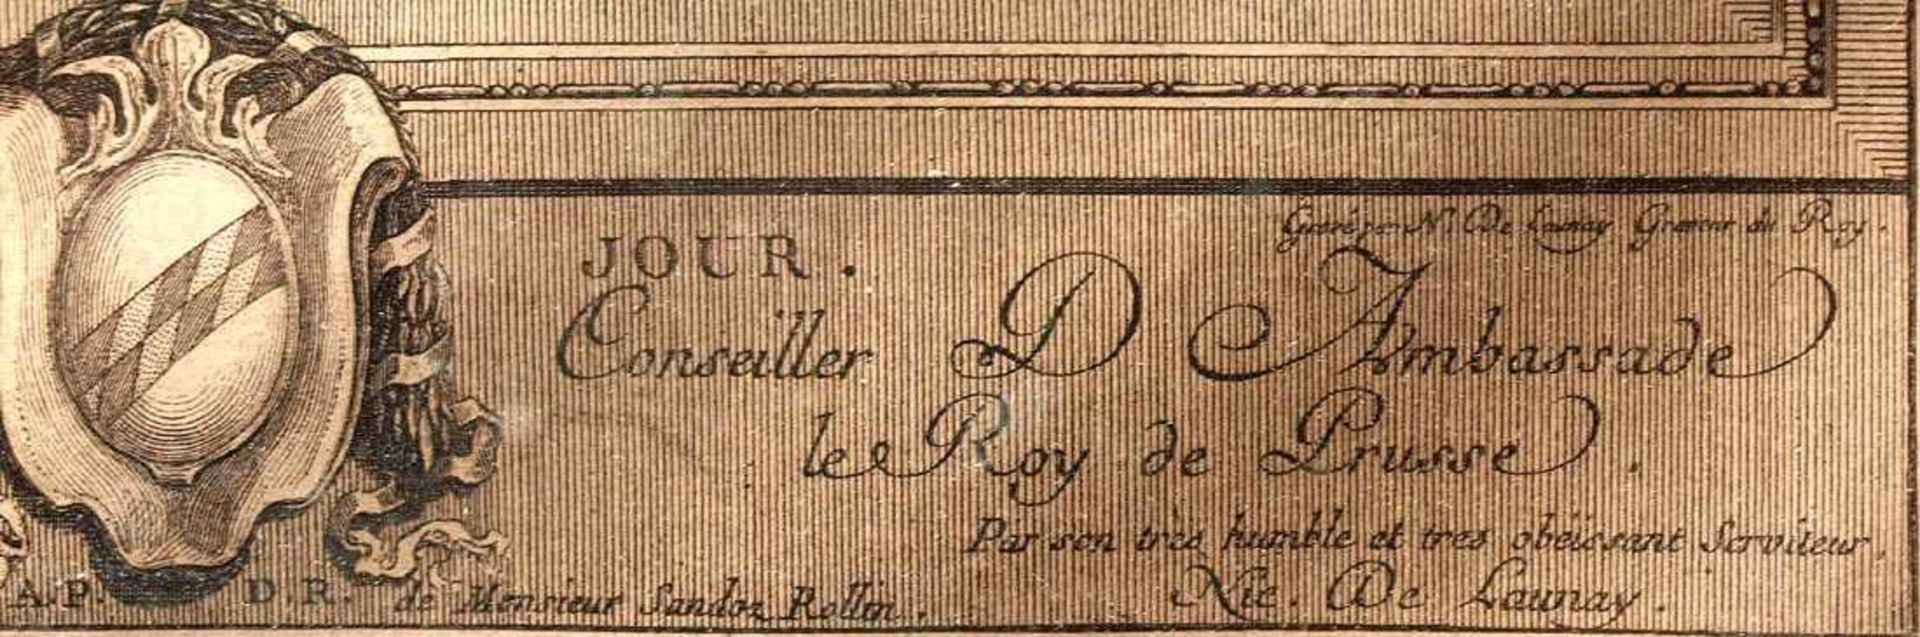 Delaunay, N.Kolorierte Radierung, bet. "Le petit jour", ger. Innenmaß des Passepartouts 39x30cm. - Bild 2 aus 2